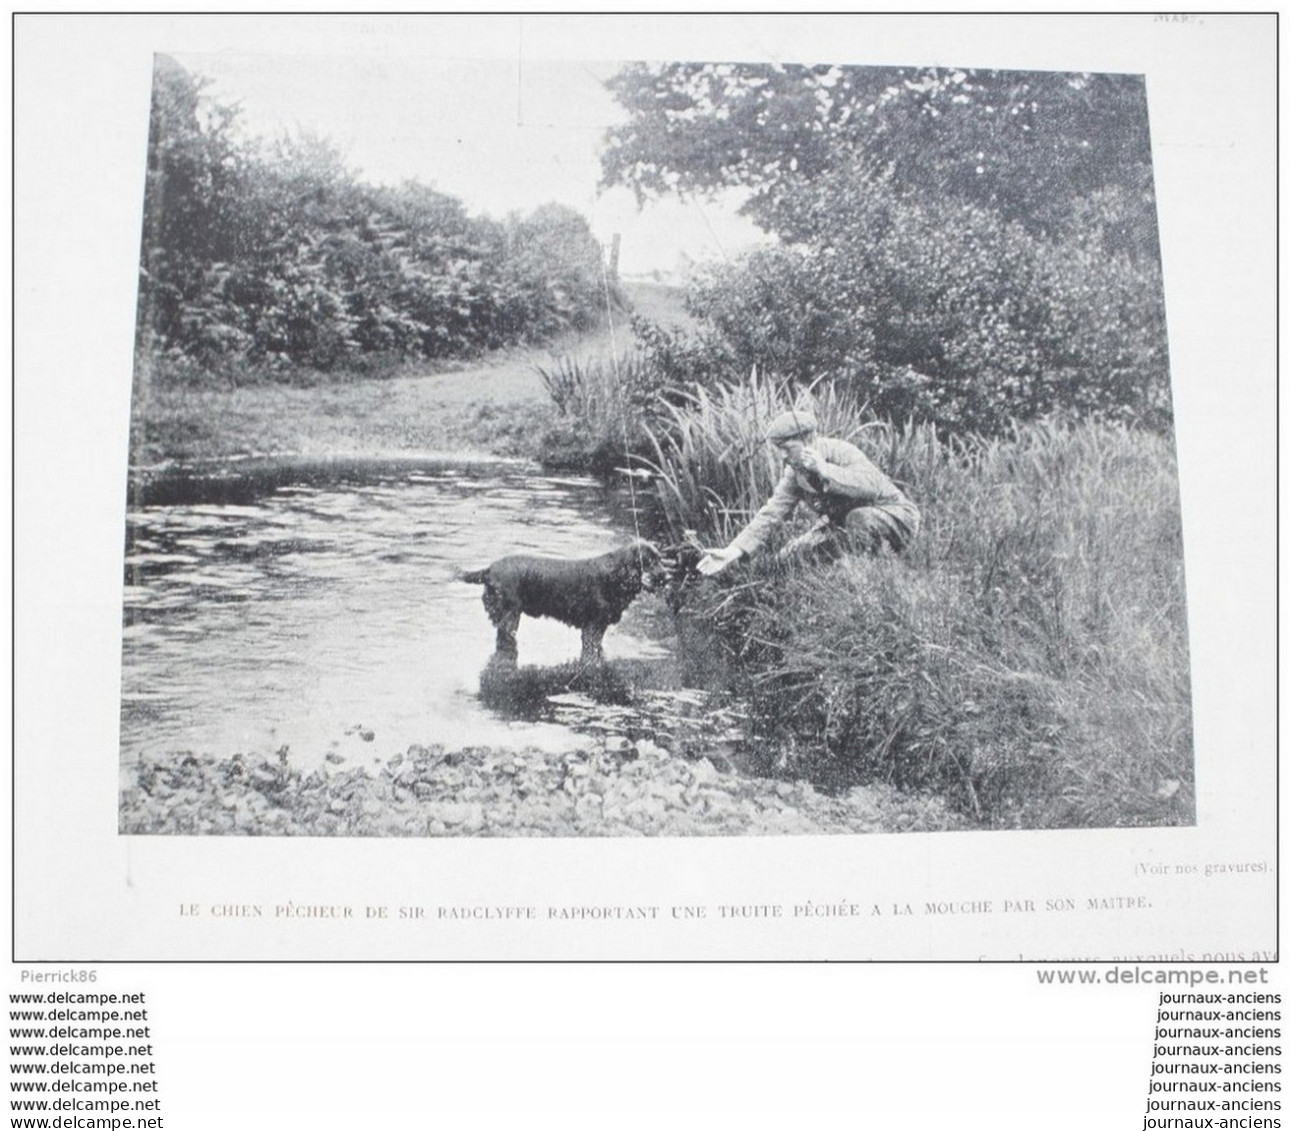 1899 YATCHTING BASSIN D'ARCACHON / L'OURS LUTTEUR / BOXE JIM JEFFRIES / ECUYERE DE HAUTE ECOLE / FOX TERRIER A POIL RAS.